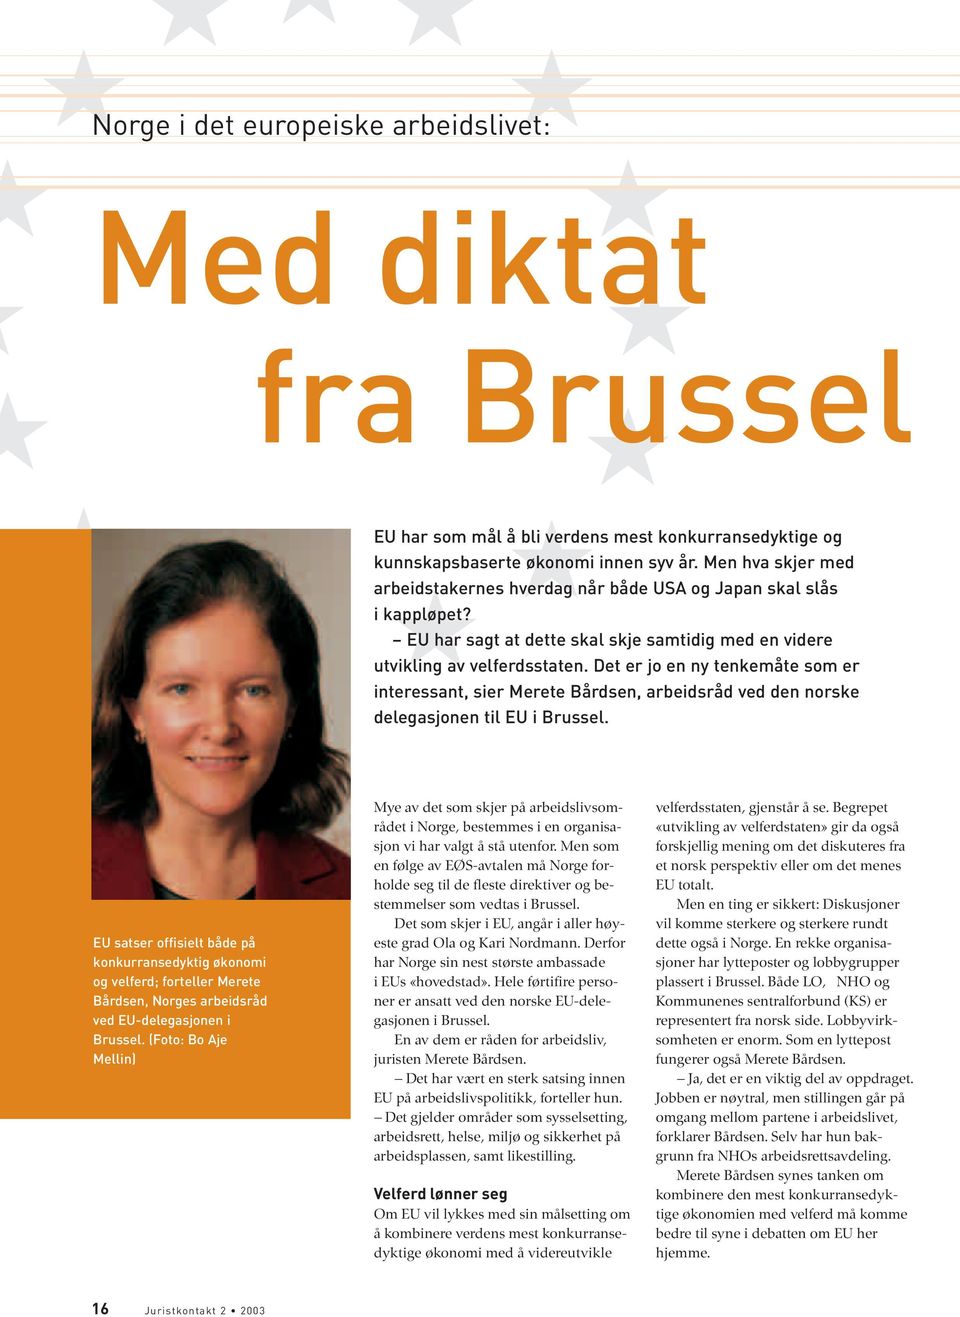 Det er jo en ny tenkemåte som er interessant, sier Merete Bårdsen, arbeidsråd ved den norske delegasjonen til EU i Brussel.